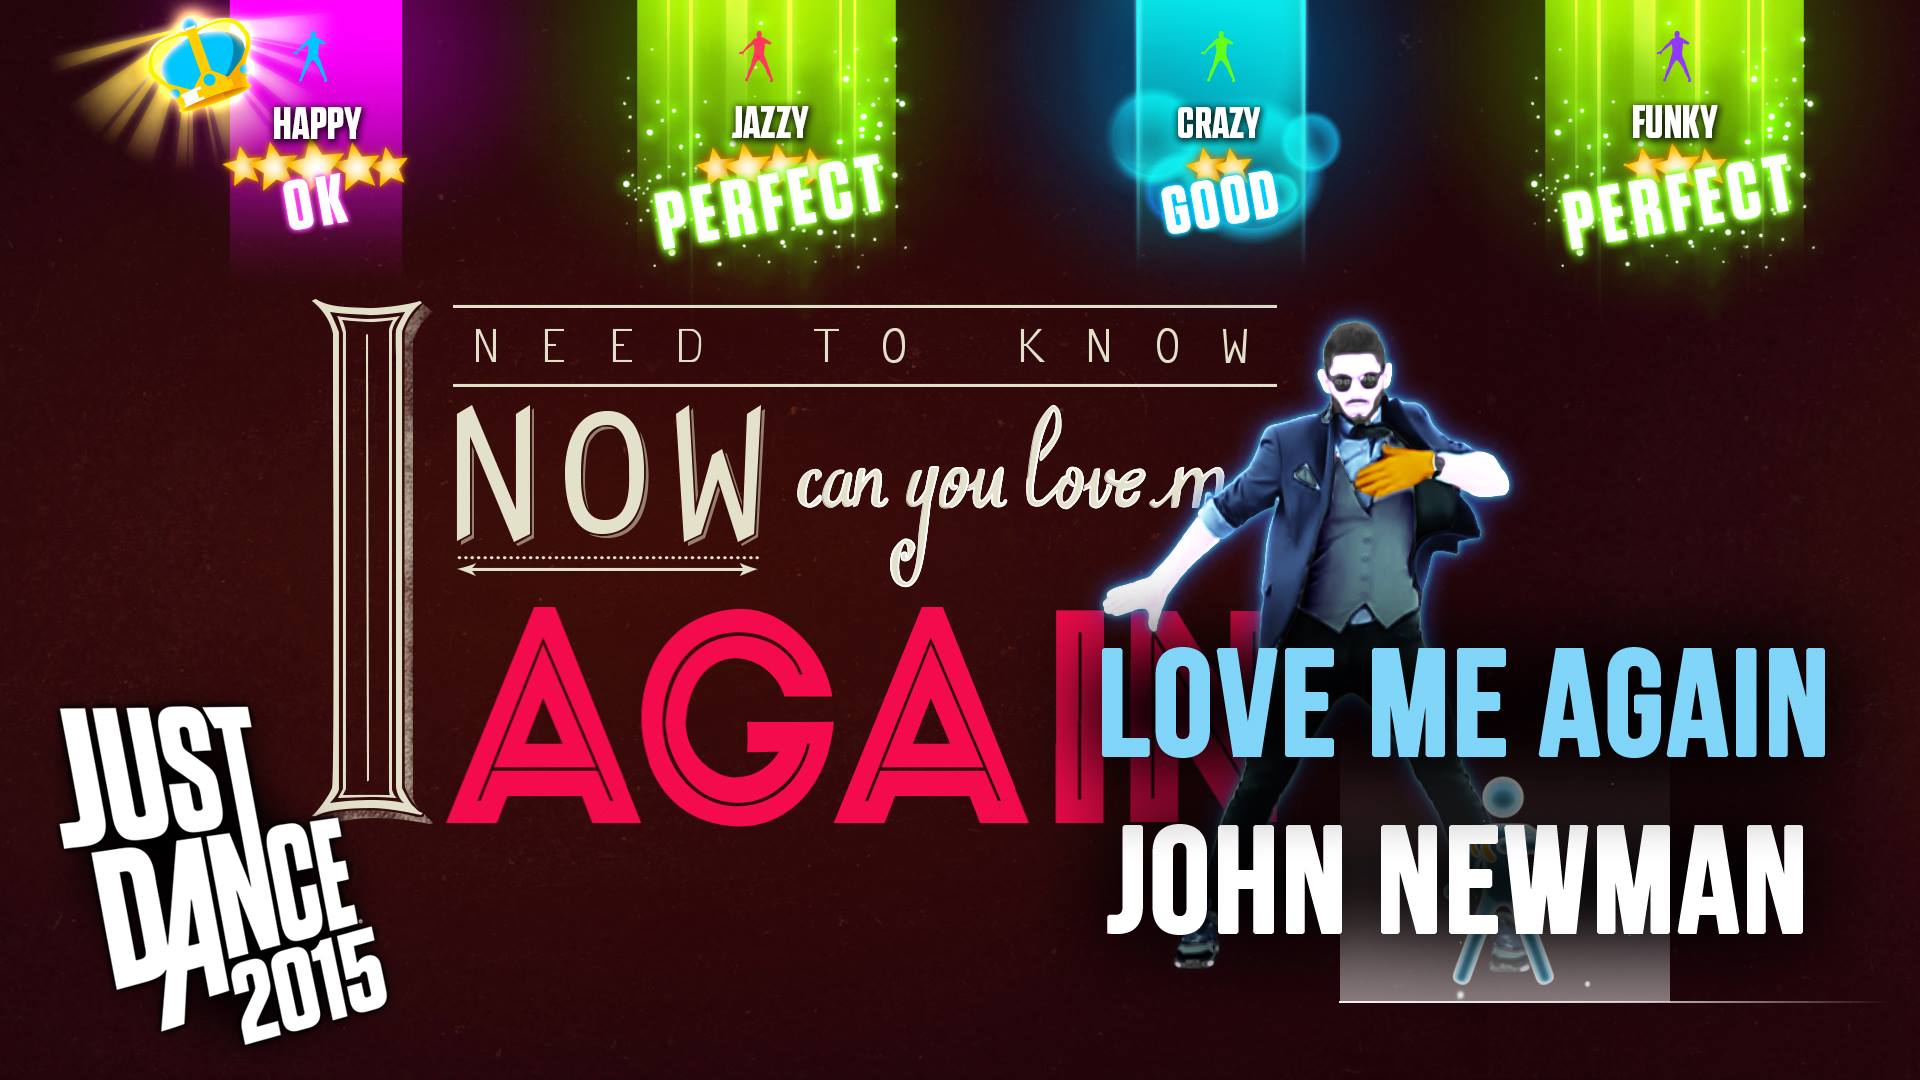 Just Dance 2015 Love Me Again John Newman Song Gameplay Screenshot